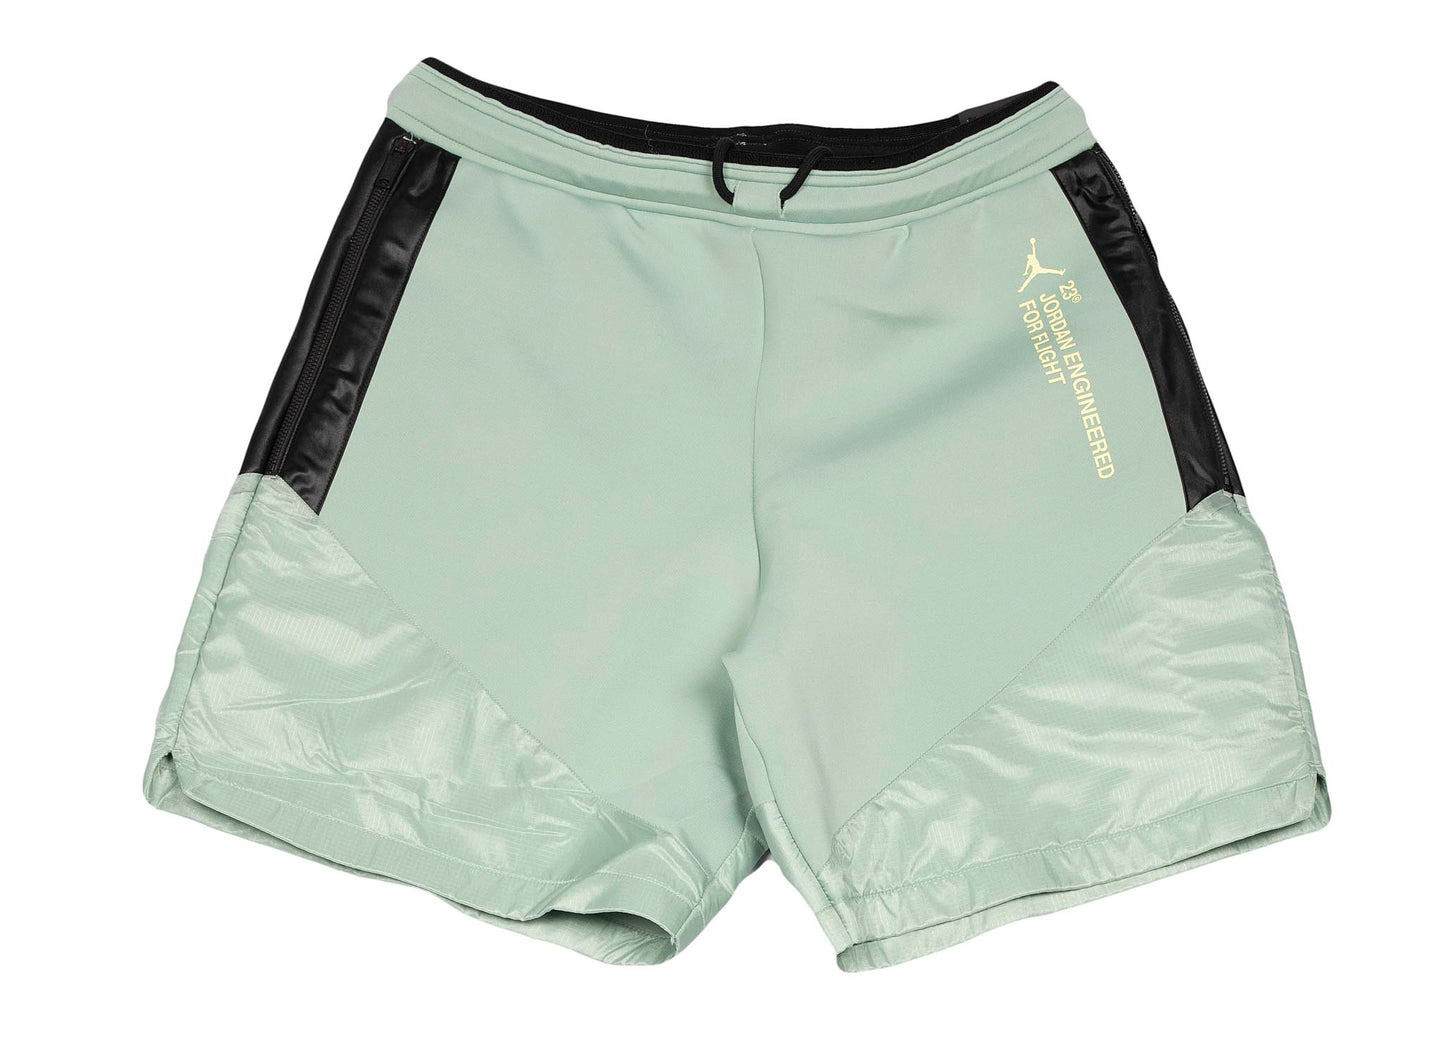 Jordan 23 Engineered Shorts 'Luminous Green'